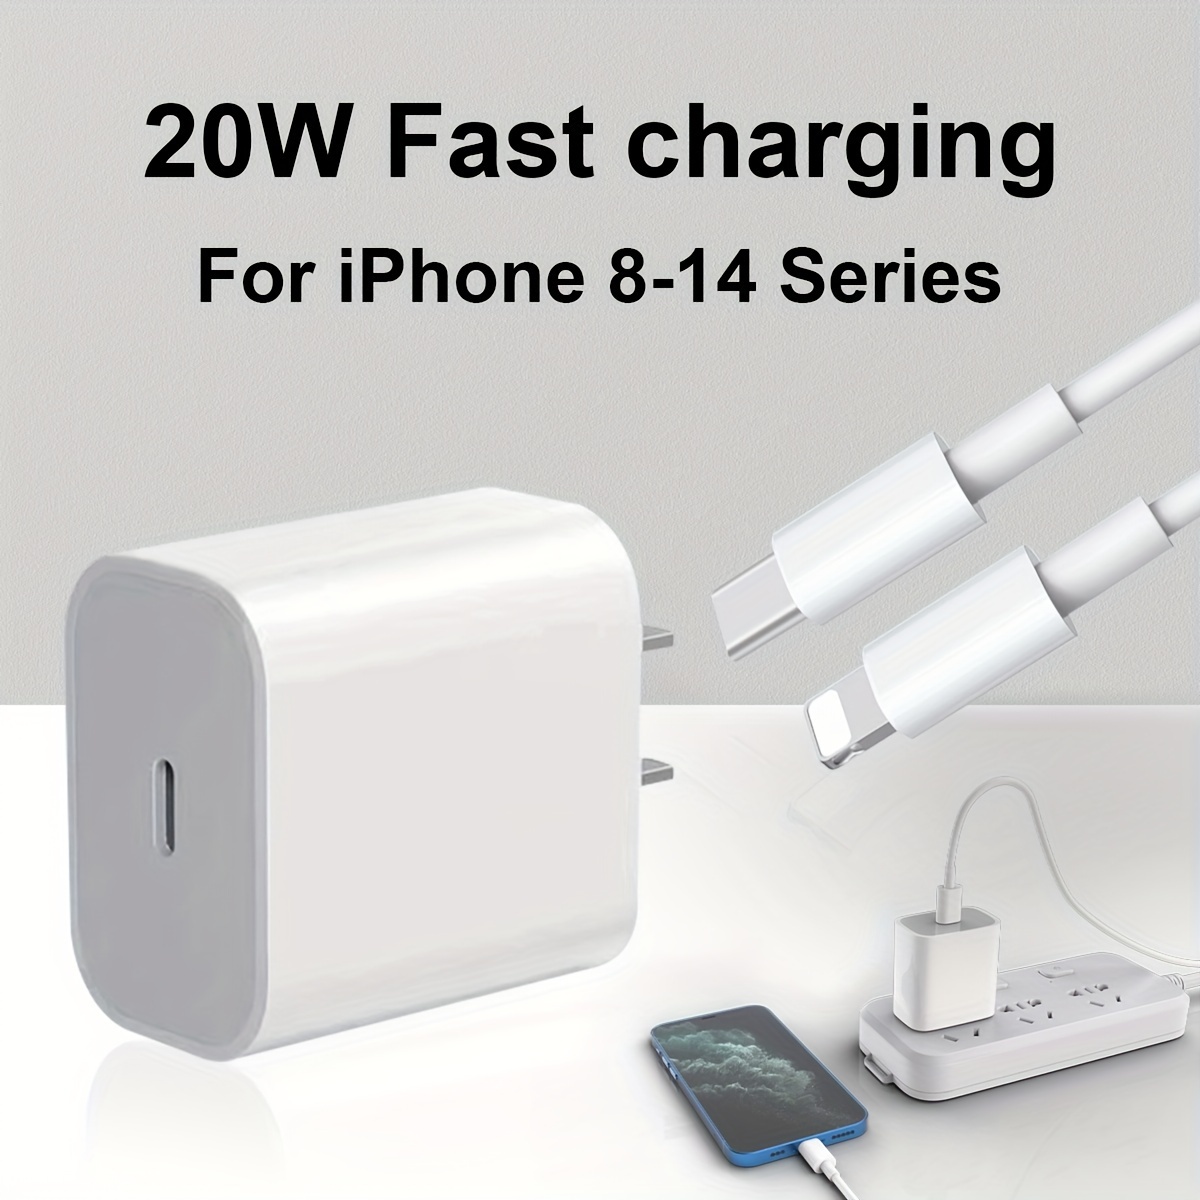 Cargador rápido para iPhone, [certificado MFi] Bloque de carga rápida USB C  de 20 W con cable Lightning de 6 pies, carga súper rápida compatible con